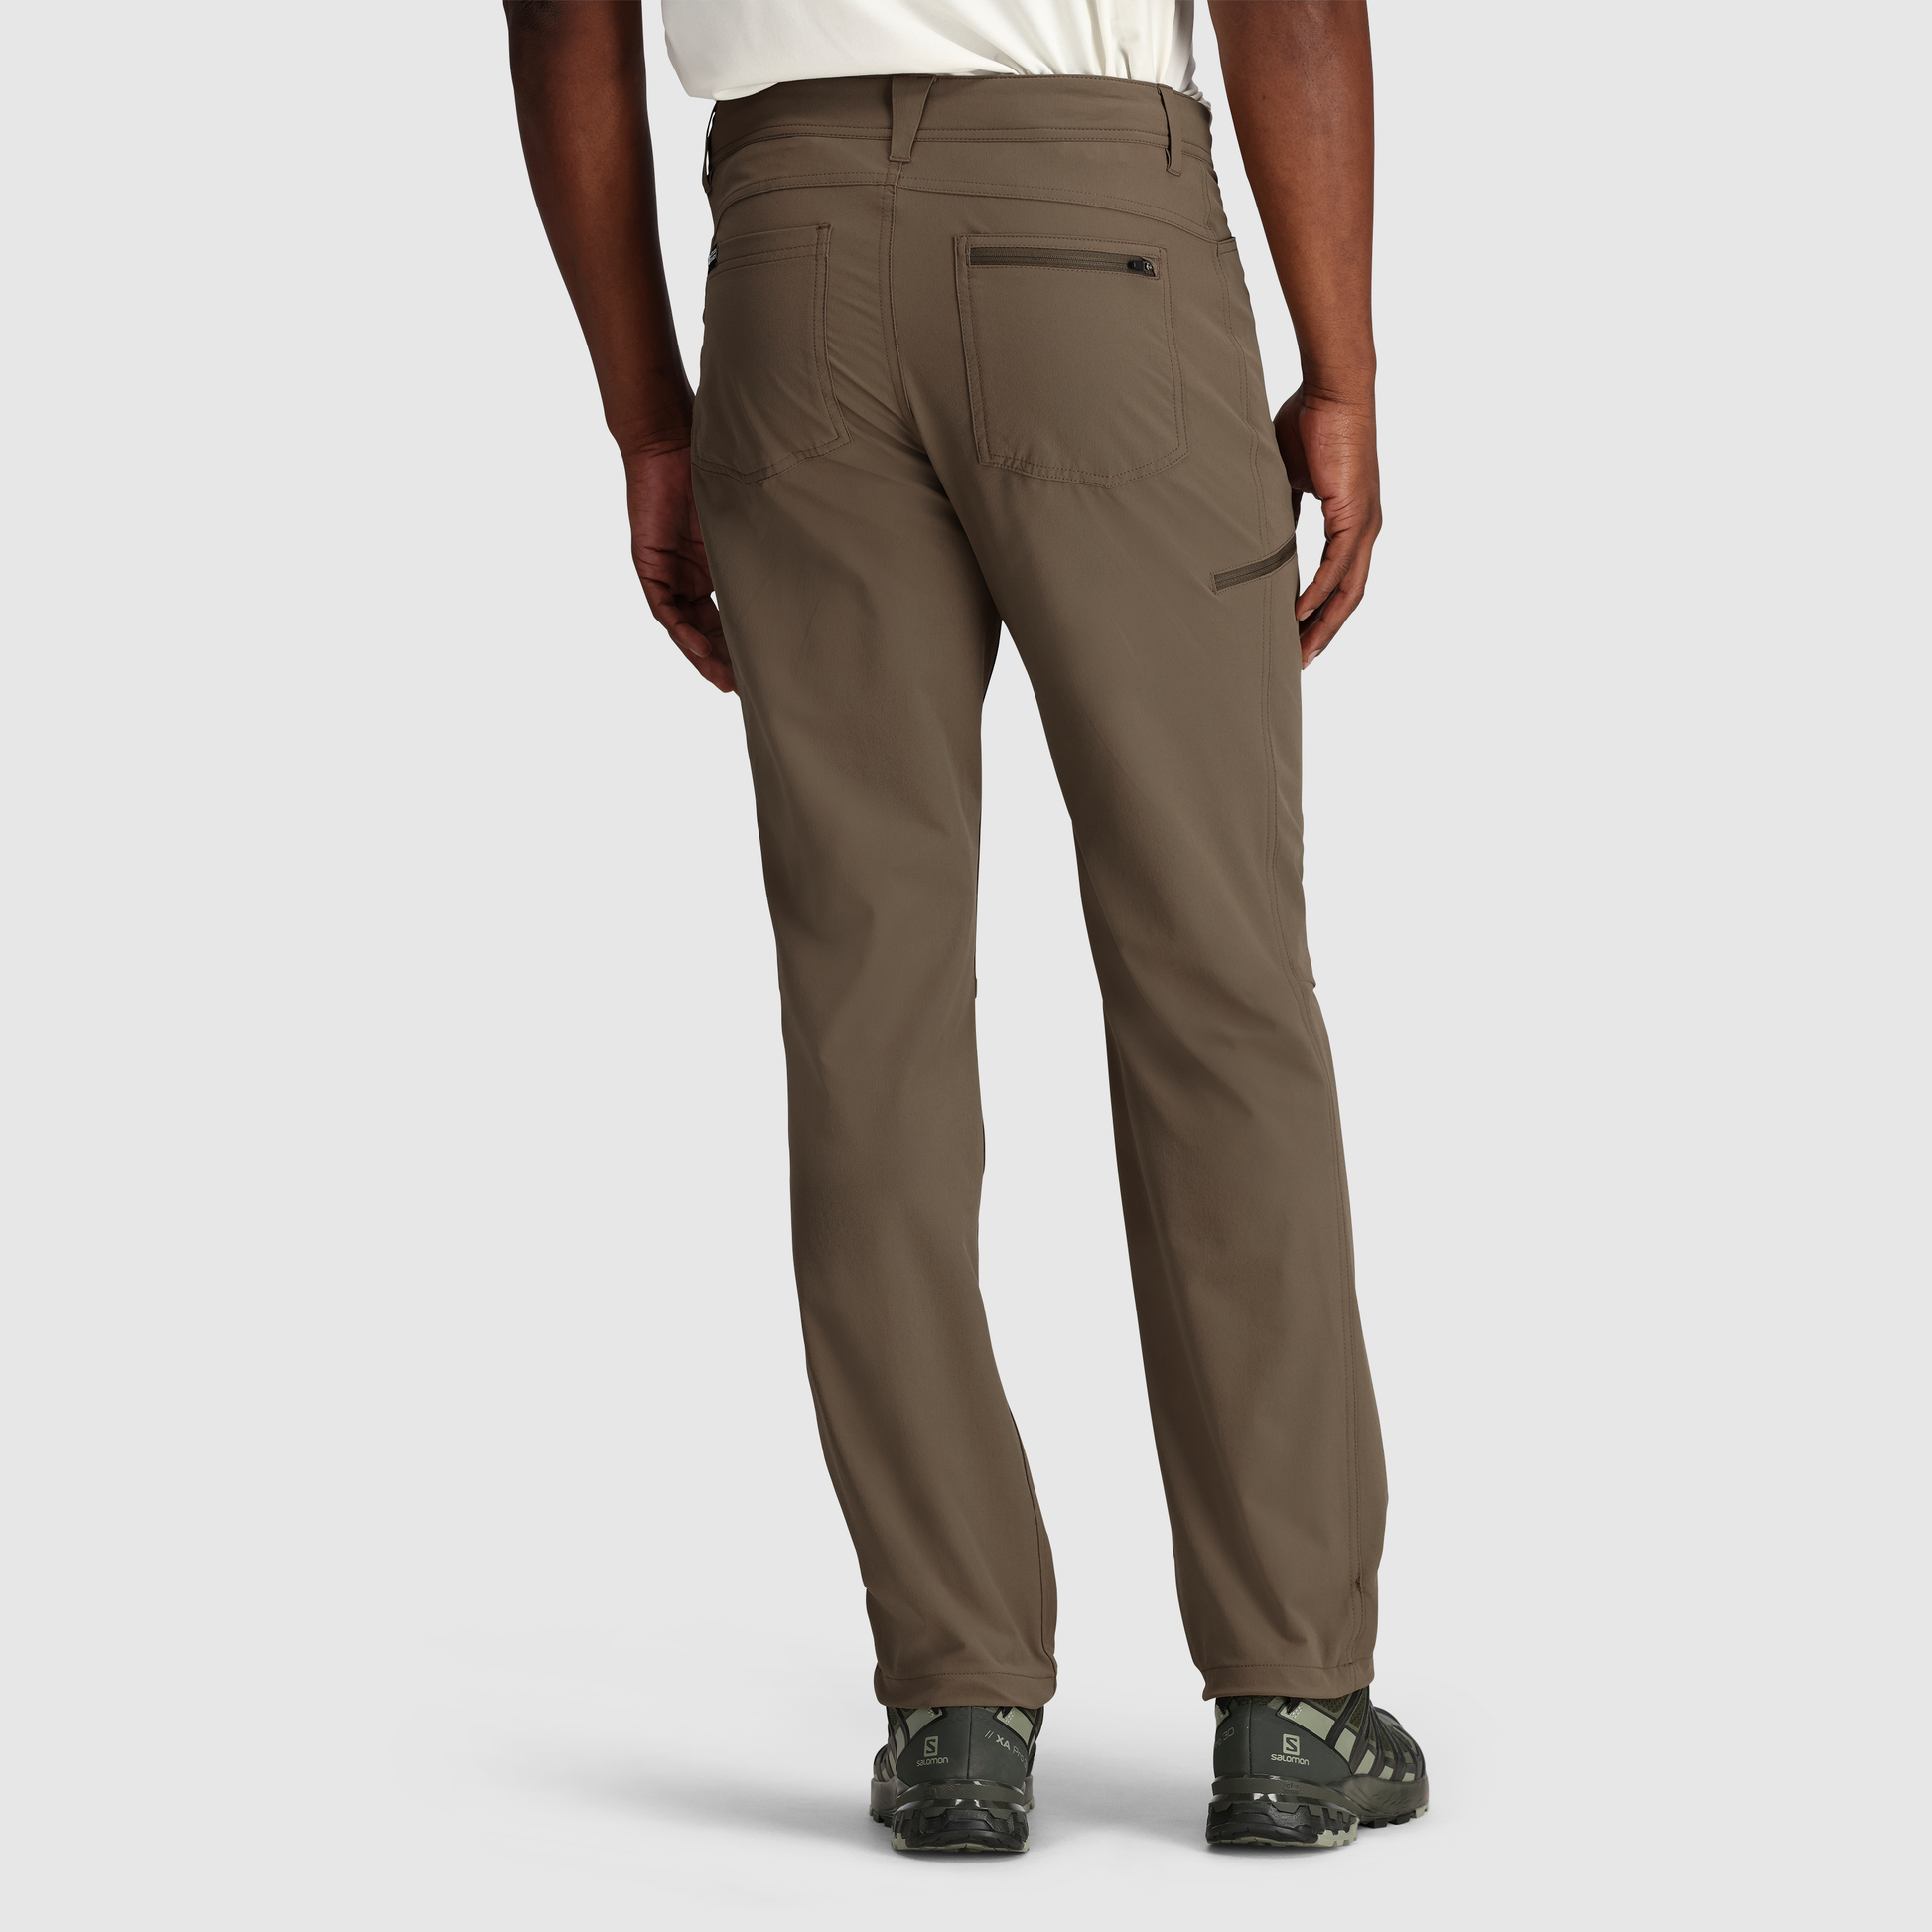 Men Cargo Pants Outdoor Work Trousers Loose Belt Loop Bottoms Hip